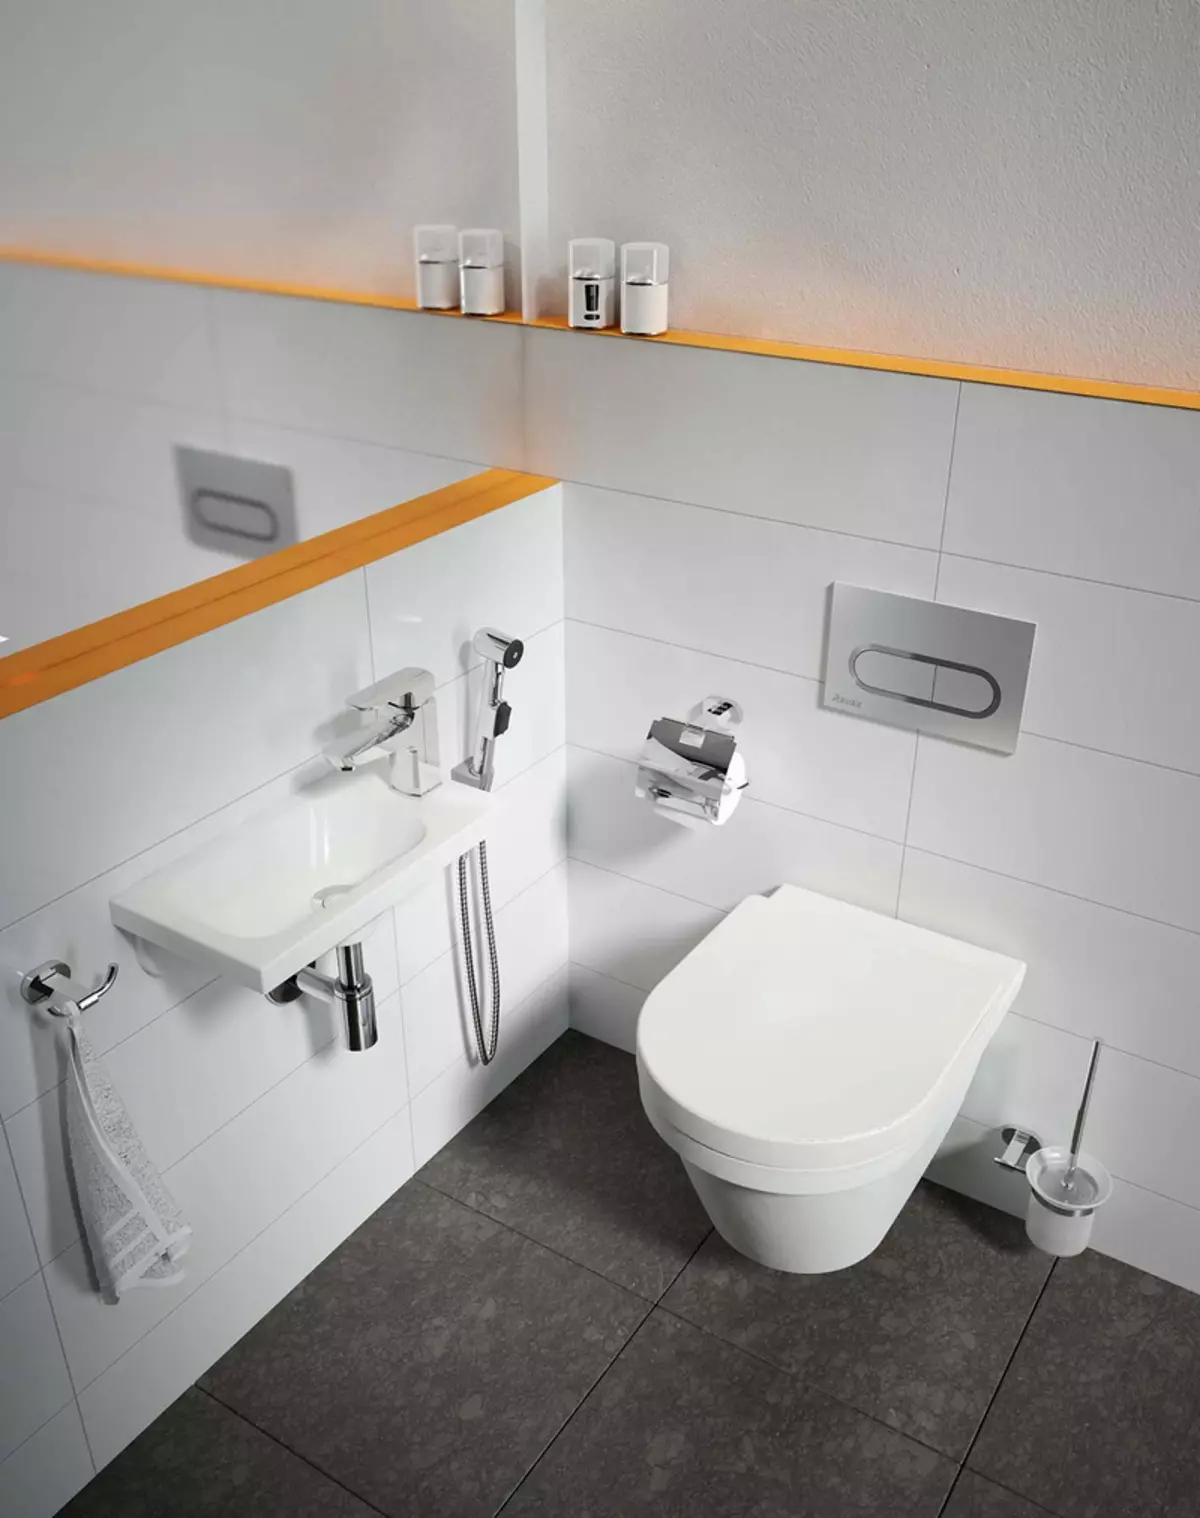 Mezcladores para fregadero con ducha higiénica: para lavabo superior, alto y de una sola arte, bronce y blanco, grohe y otras marcas 10382_7